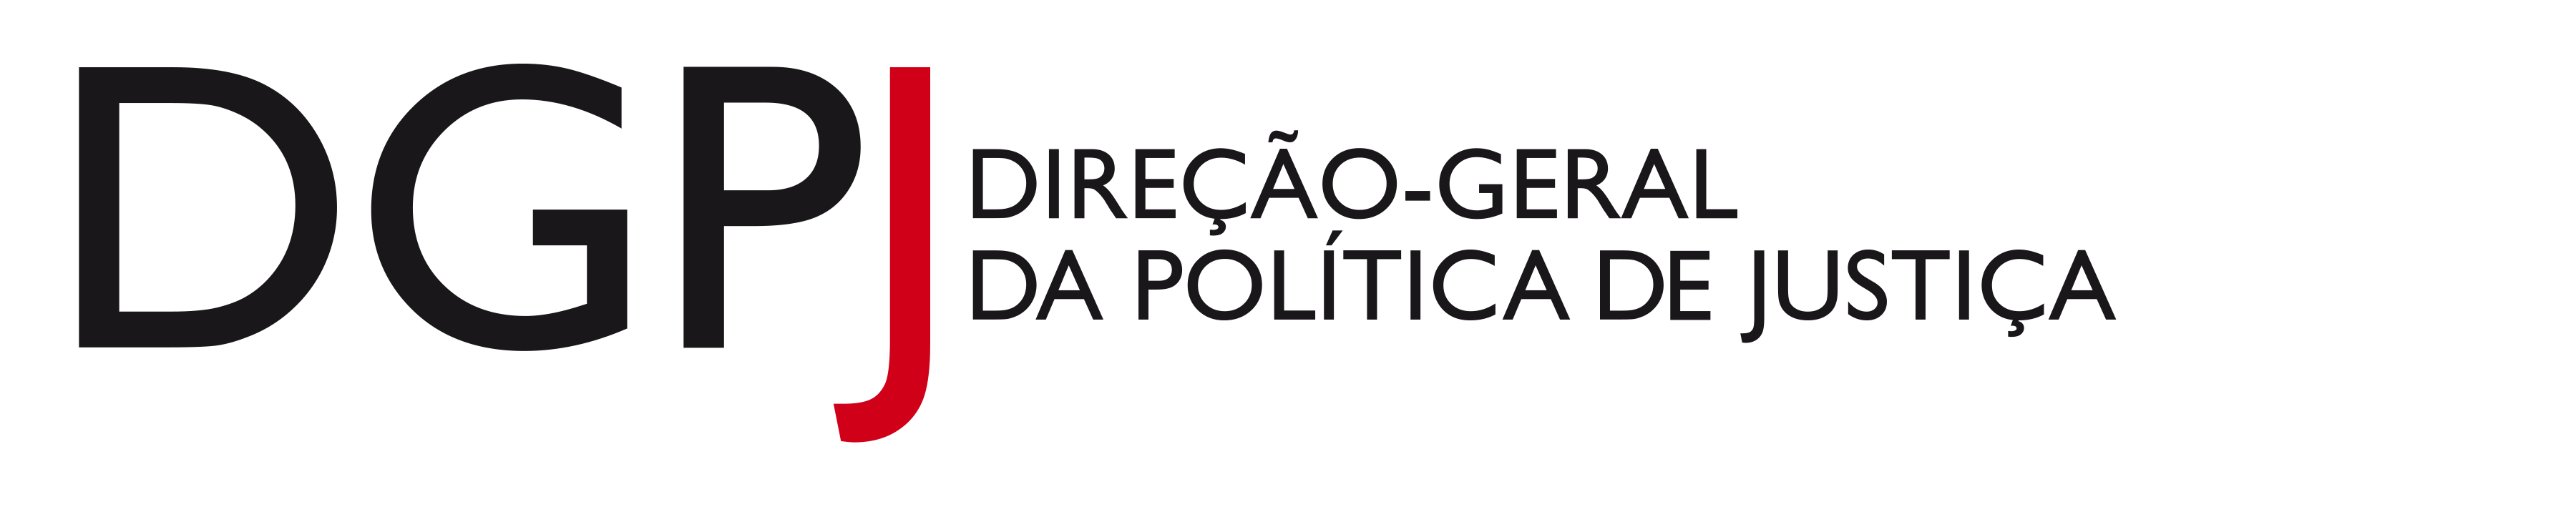 DGPJ - Direção-Geral da Política de Justiça